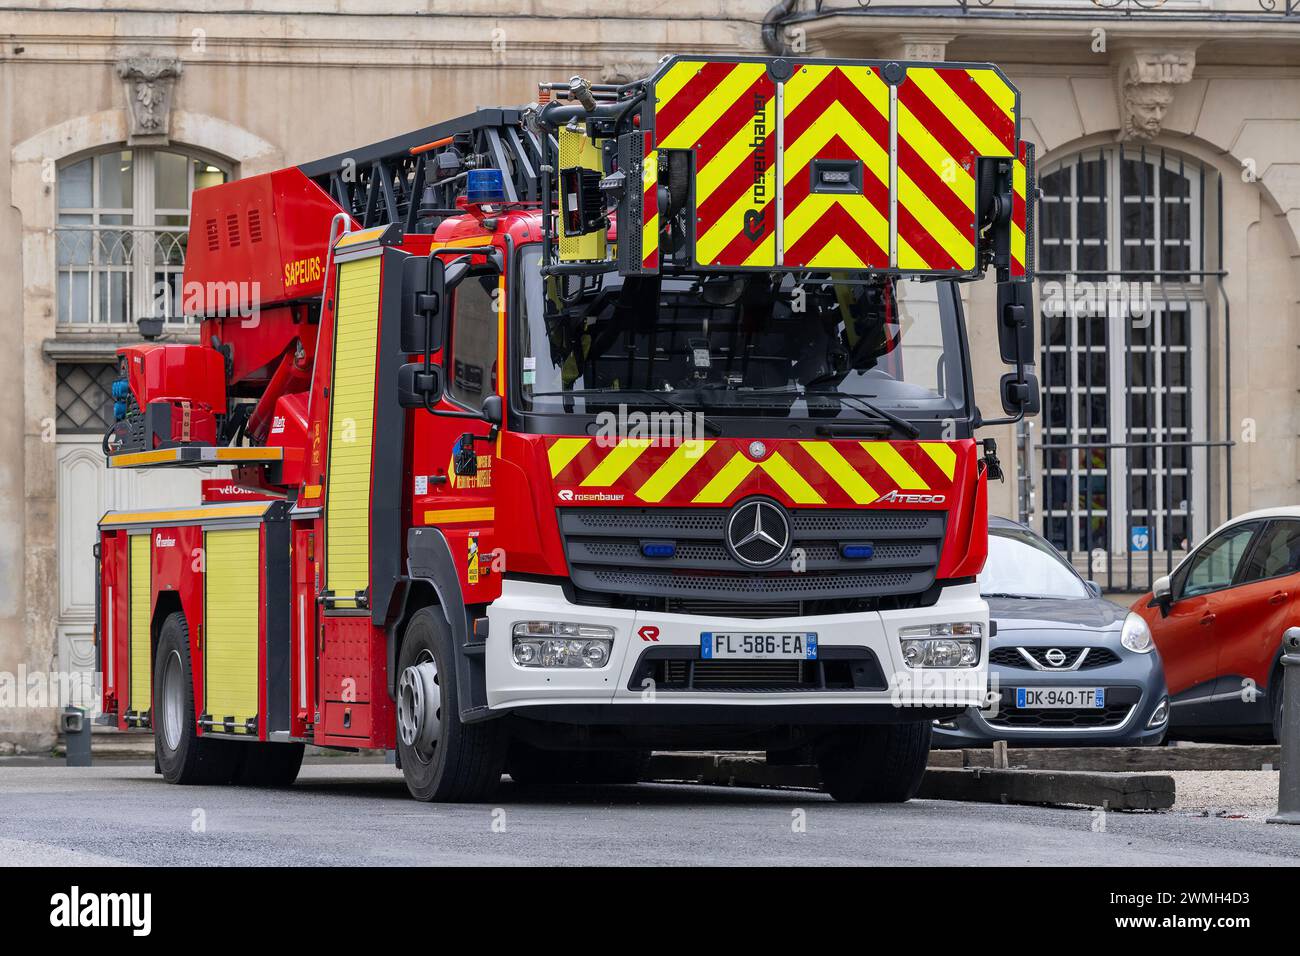 Nancy, Frankreich - Drehleiter mit der Feuerwehr in Frankreich der Feuerwehr und Rettungsdienst Meurthe-et-Moselle (SDIS 54). Stockfoto